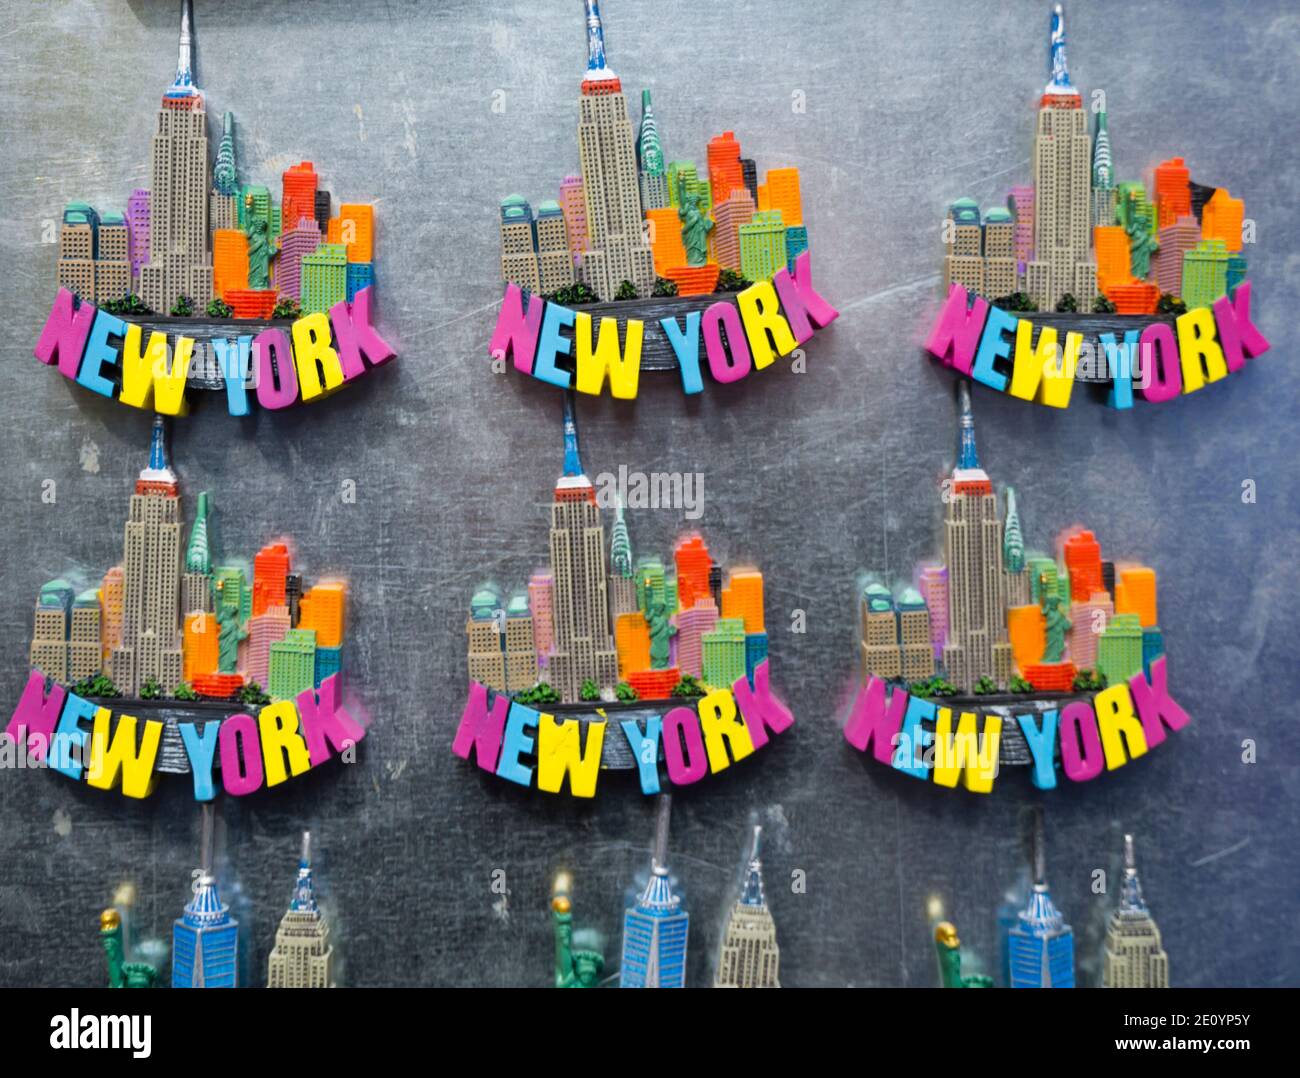 New York City, NY (USA) - 16. November 2019: New York Souvenirs, Kühlschrankmagnete und Merchandise zum Verkauf an einem Stand in Manhattan Stockfoto